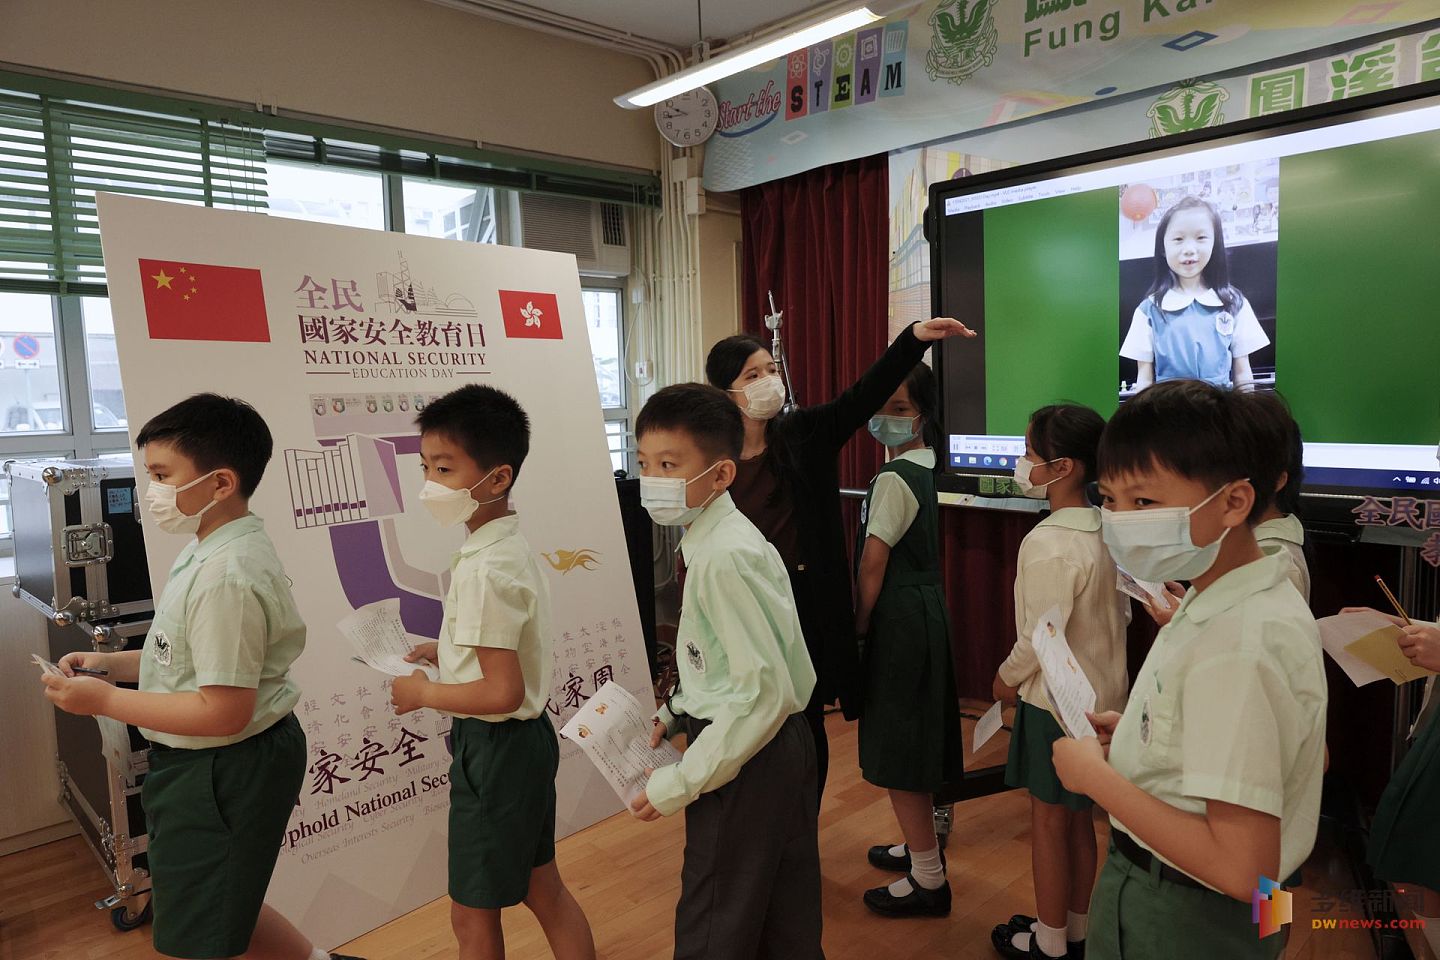 4月15日为“全民国家安全教育日”，香港有小学举办一连串相关的教学活动，宣导国家安全、国安法等概念。（多维新闻）